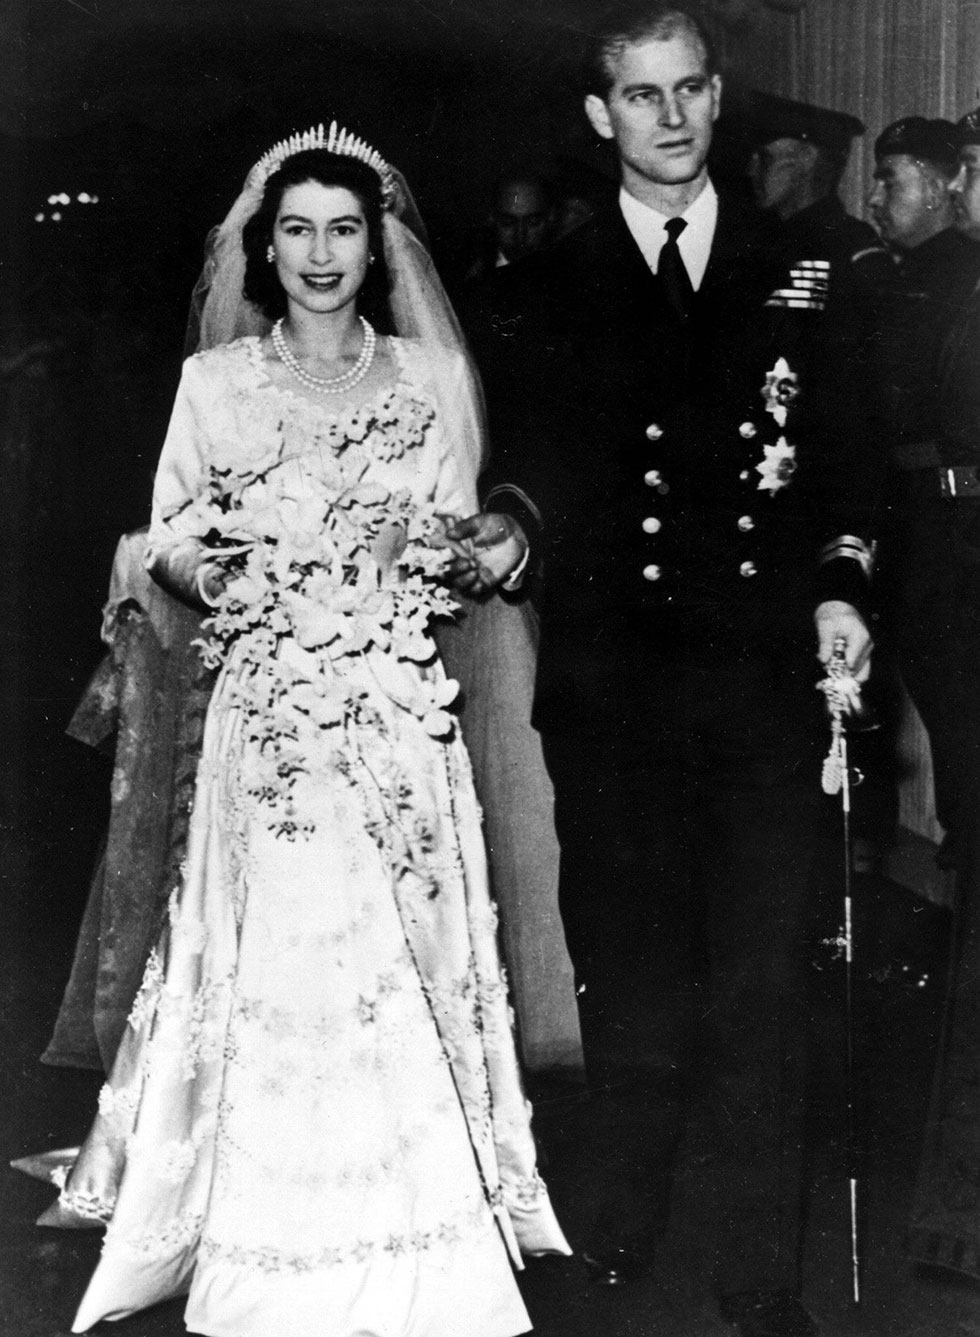 החתונה המלכותית, נובמבר 1947. רגע נדיר של שמחה וצבעוניות בממלכה שליקקה את פצעיה אחרי מלחמת העולם השנייה (צילום: AP) (צילום: AP)